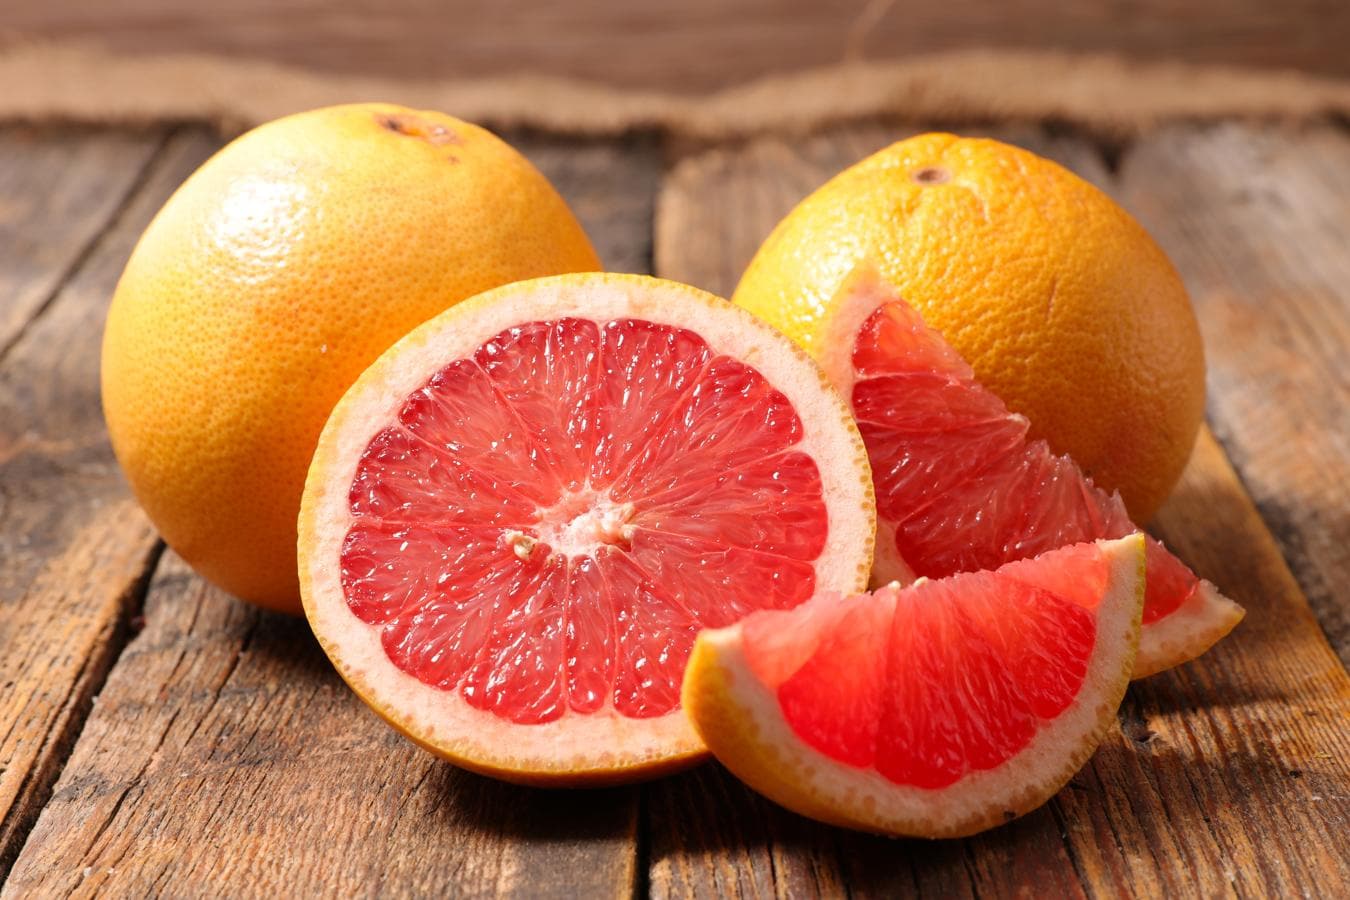 El pomelo, con más vitamina C que la mandarina. El pomelo o toronja es una fruta cítrica que destaca por ser una gran fuente de vitamina C (unos 36 mg por cada 100 gramos) y ácido fólico.